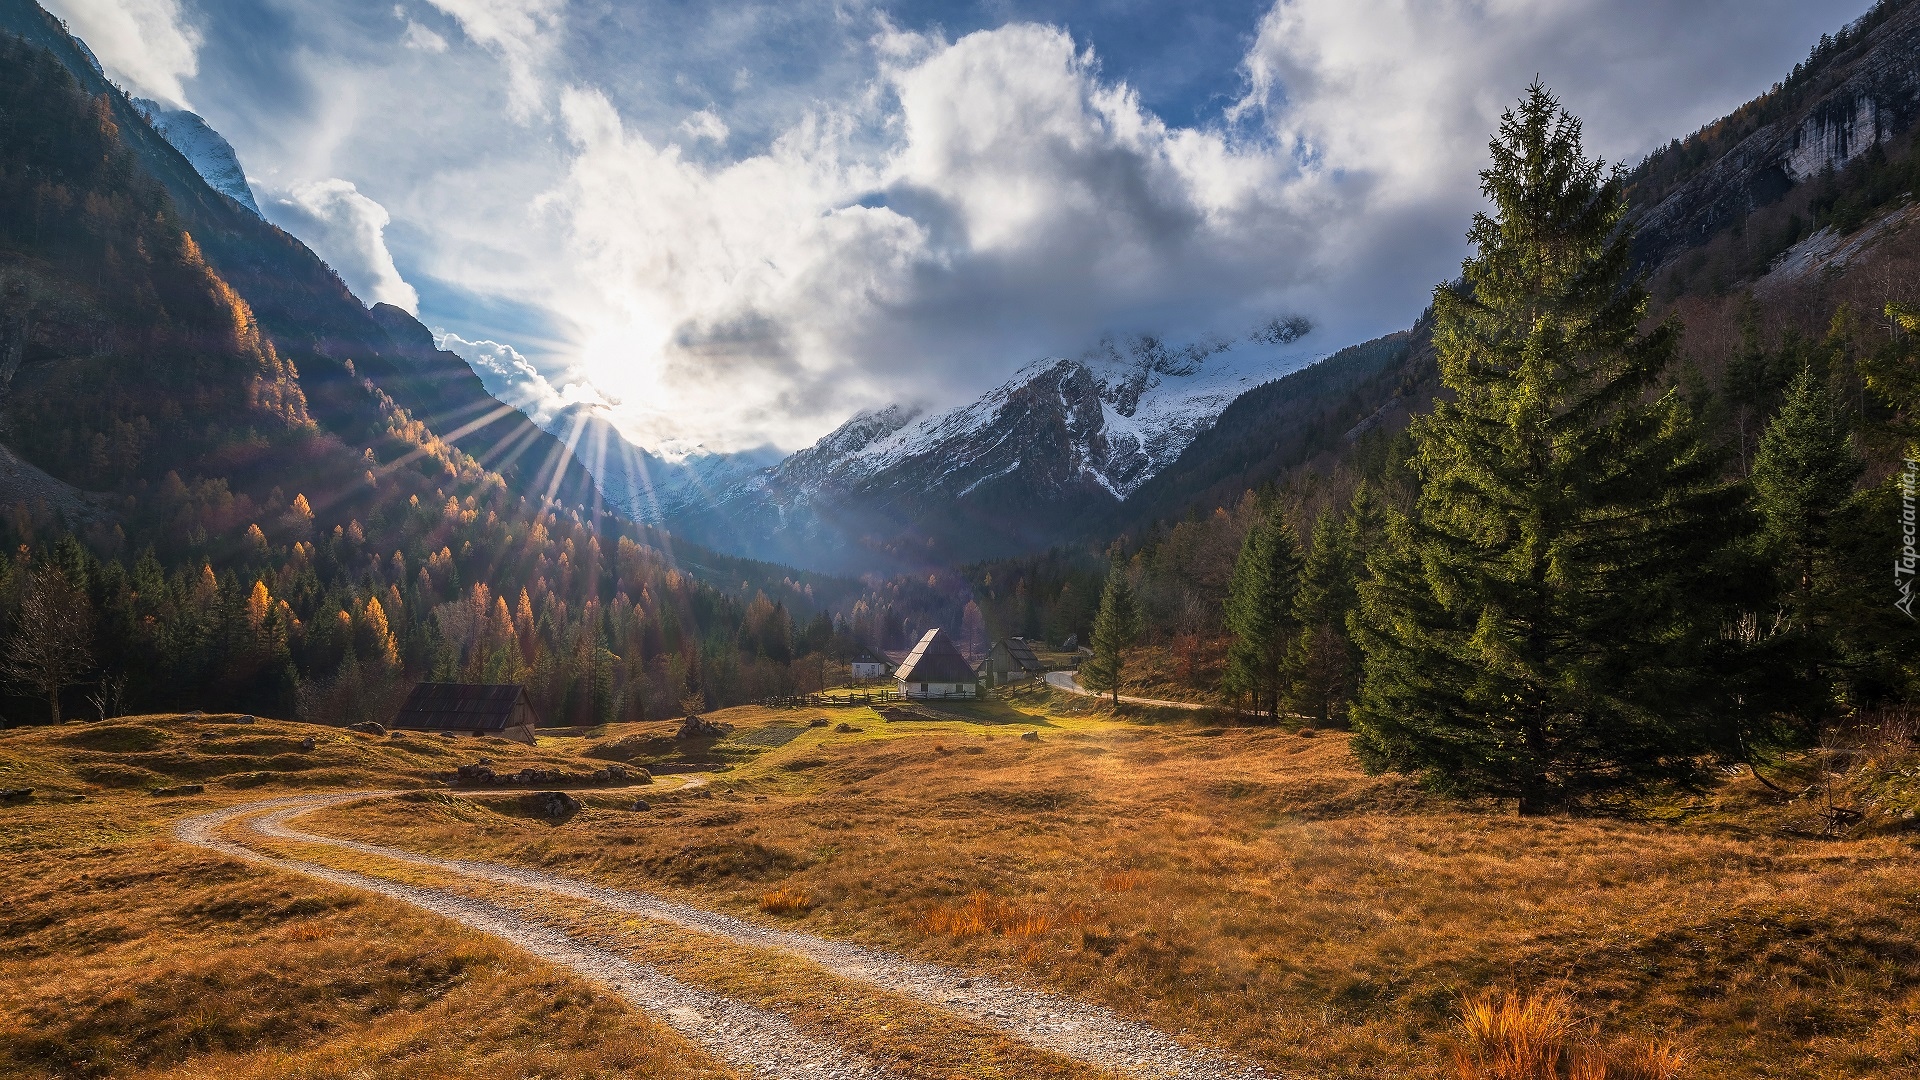 Dolina Zadnja Trenta, Triglavski Park Narodowy, Słowenia, Góry Alpy Julijskie, Droga, Drzewa, Domy, Promienie słońca